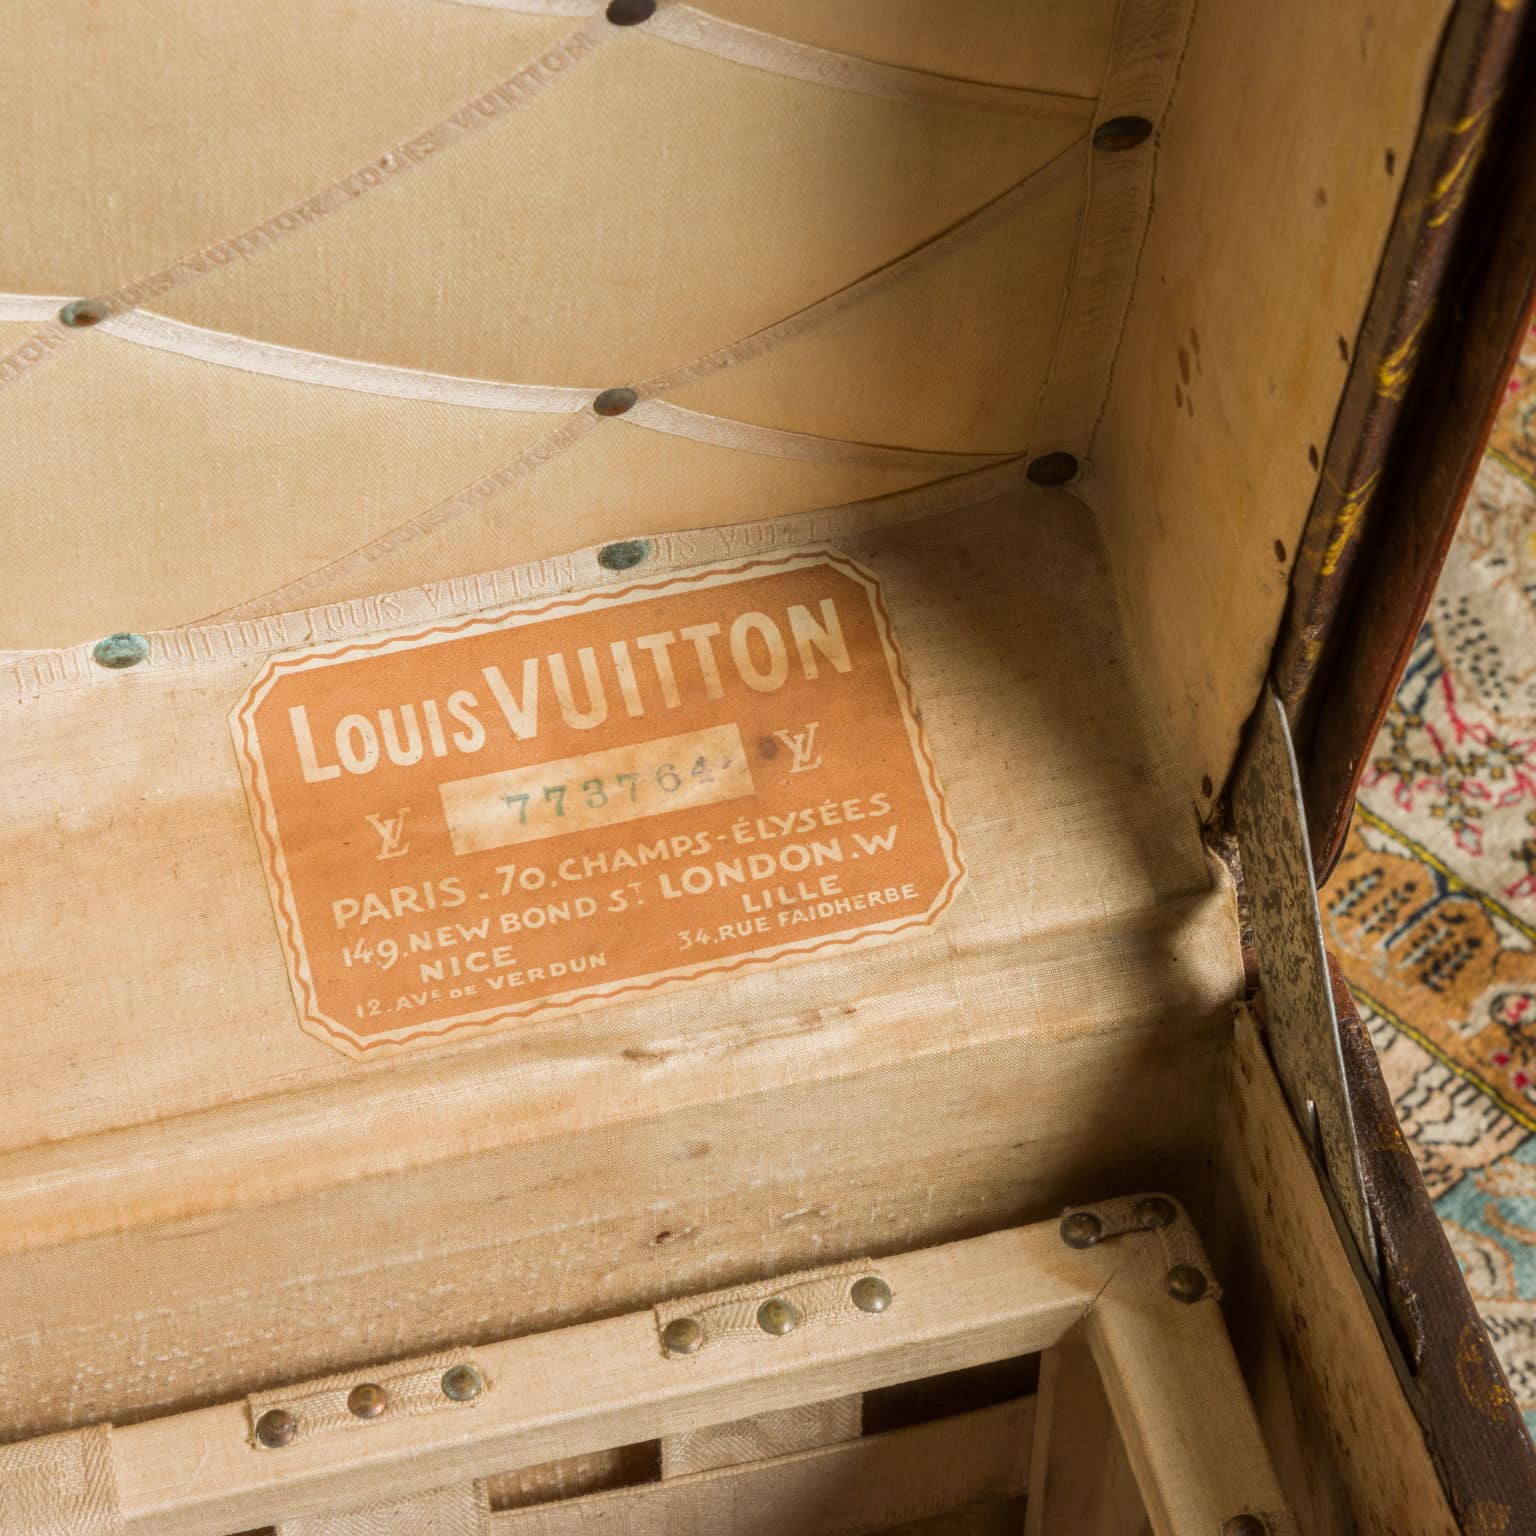 Louis Vuitton trunk Malle à Chapeaux. Paris, around 1926 - Fineart